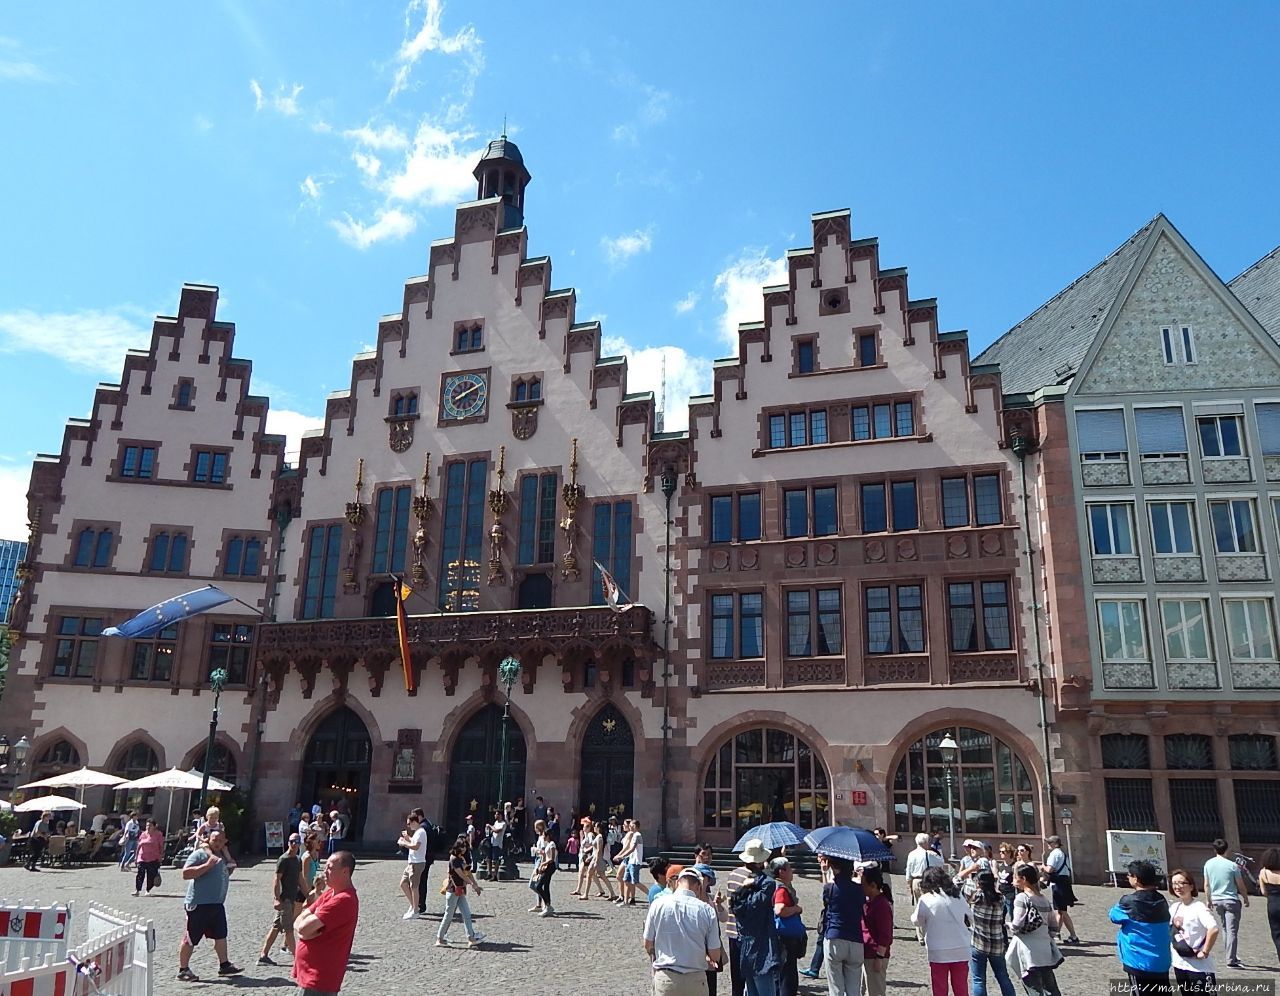 В 1405 году городские власти Франкфурта выкупили у знатного семейства Рёмер 2 здания — К Рёмеру и Черный лебедь, с тех пор это городская Ратуша. Сейчас ратуша состоит из 11 зданий, соединенных между собой. Франкфурт-на-Майне, Германия